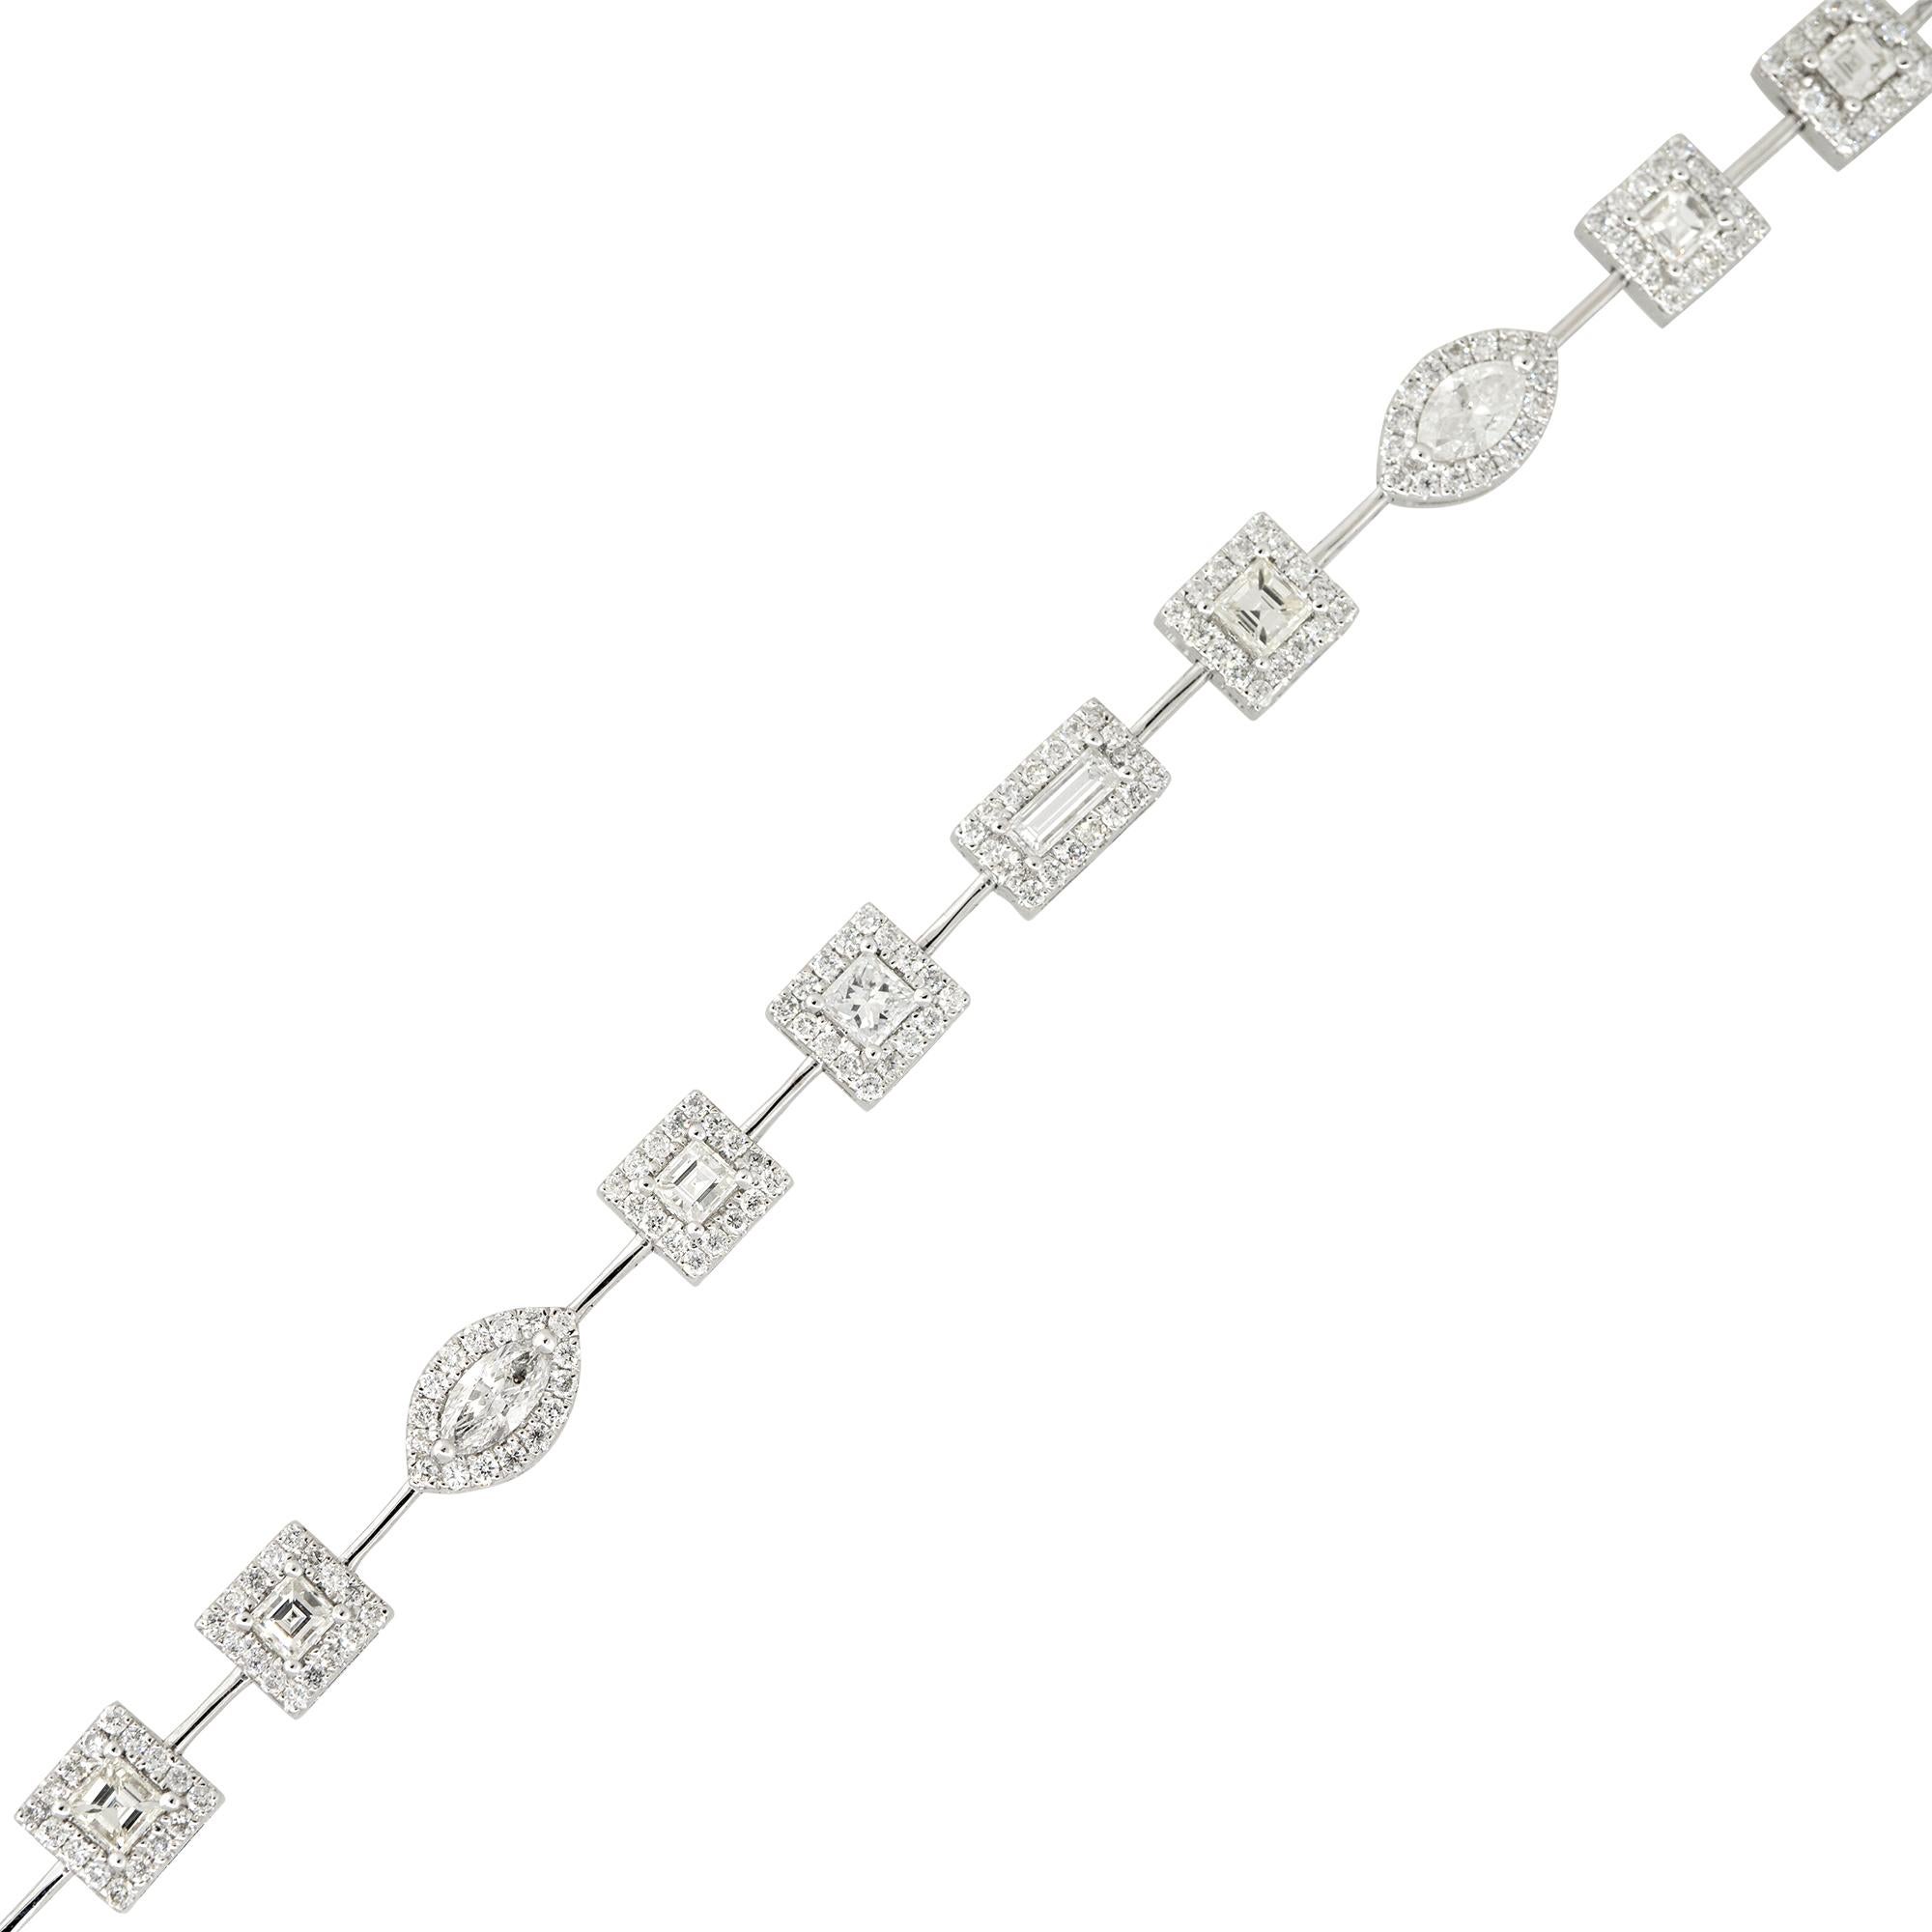 Bracelet Halo en or blanc 18k 3.75ctw Multi-Shape Diamond Halo Bracelet
MATERIAL : Or blanc 18k
Détails des diamants : Environ 3,75ctw de diamants de taille Marquise, Asscher, Radiant, Emeraude et Baguette. Chaque pierre plus importante est entourée